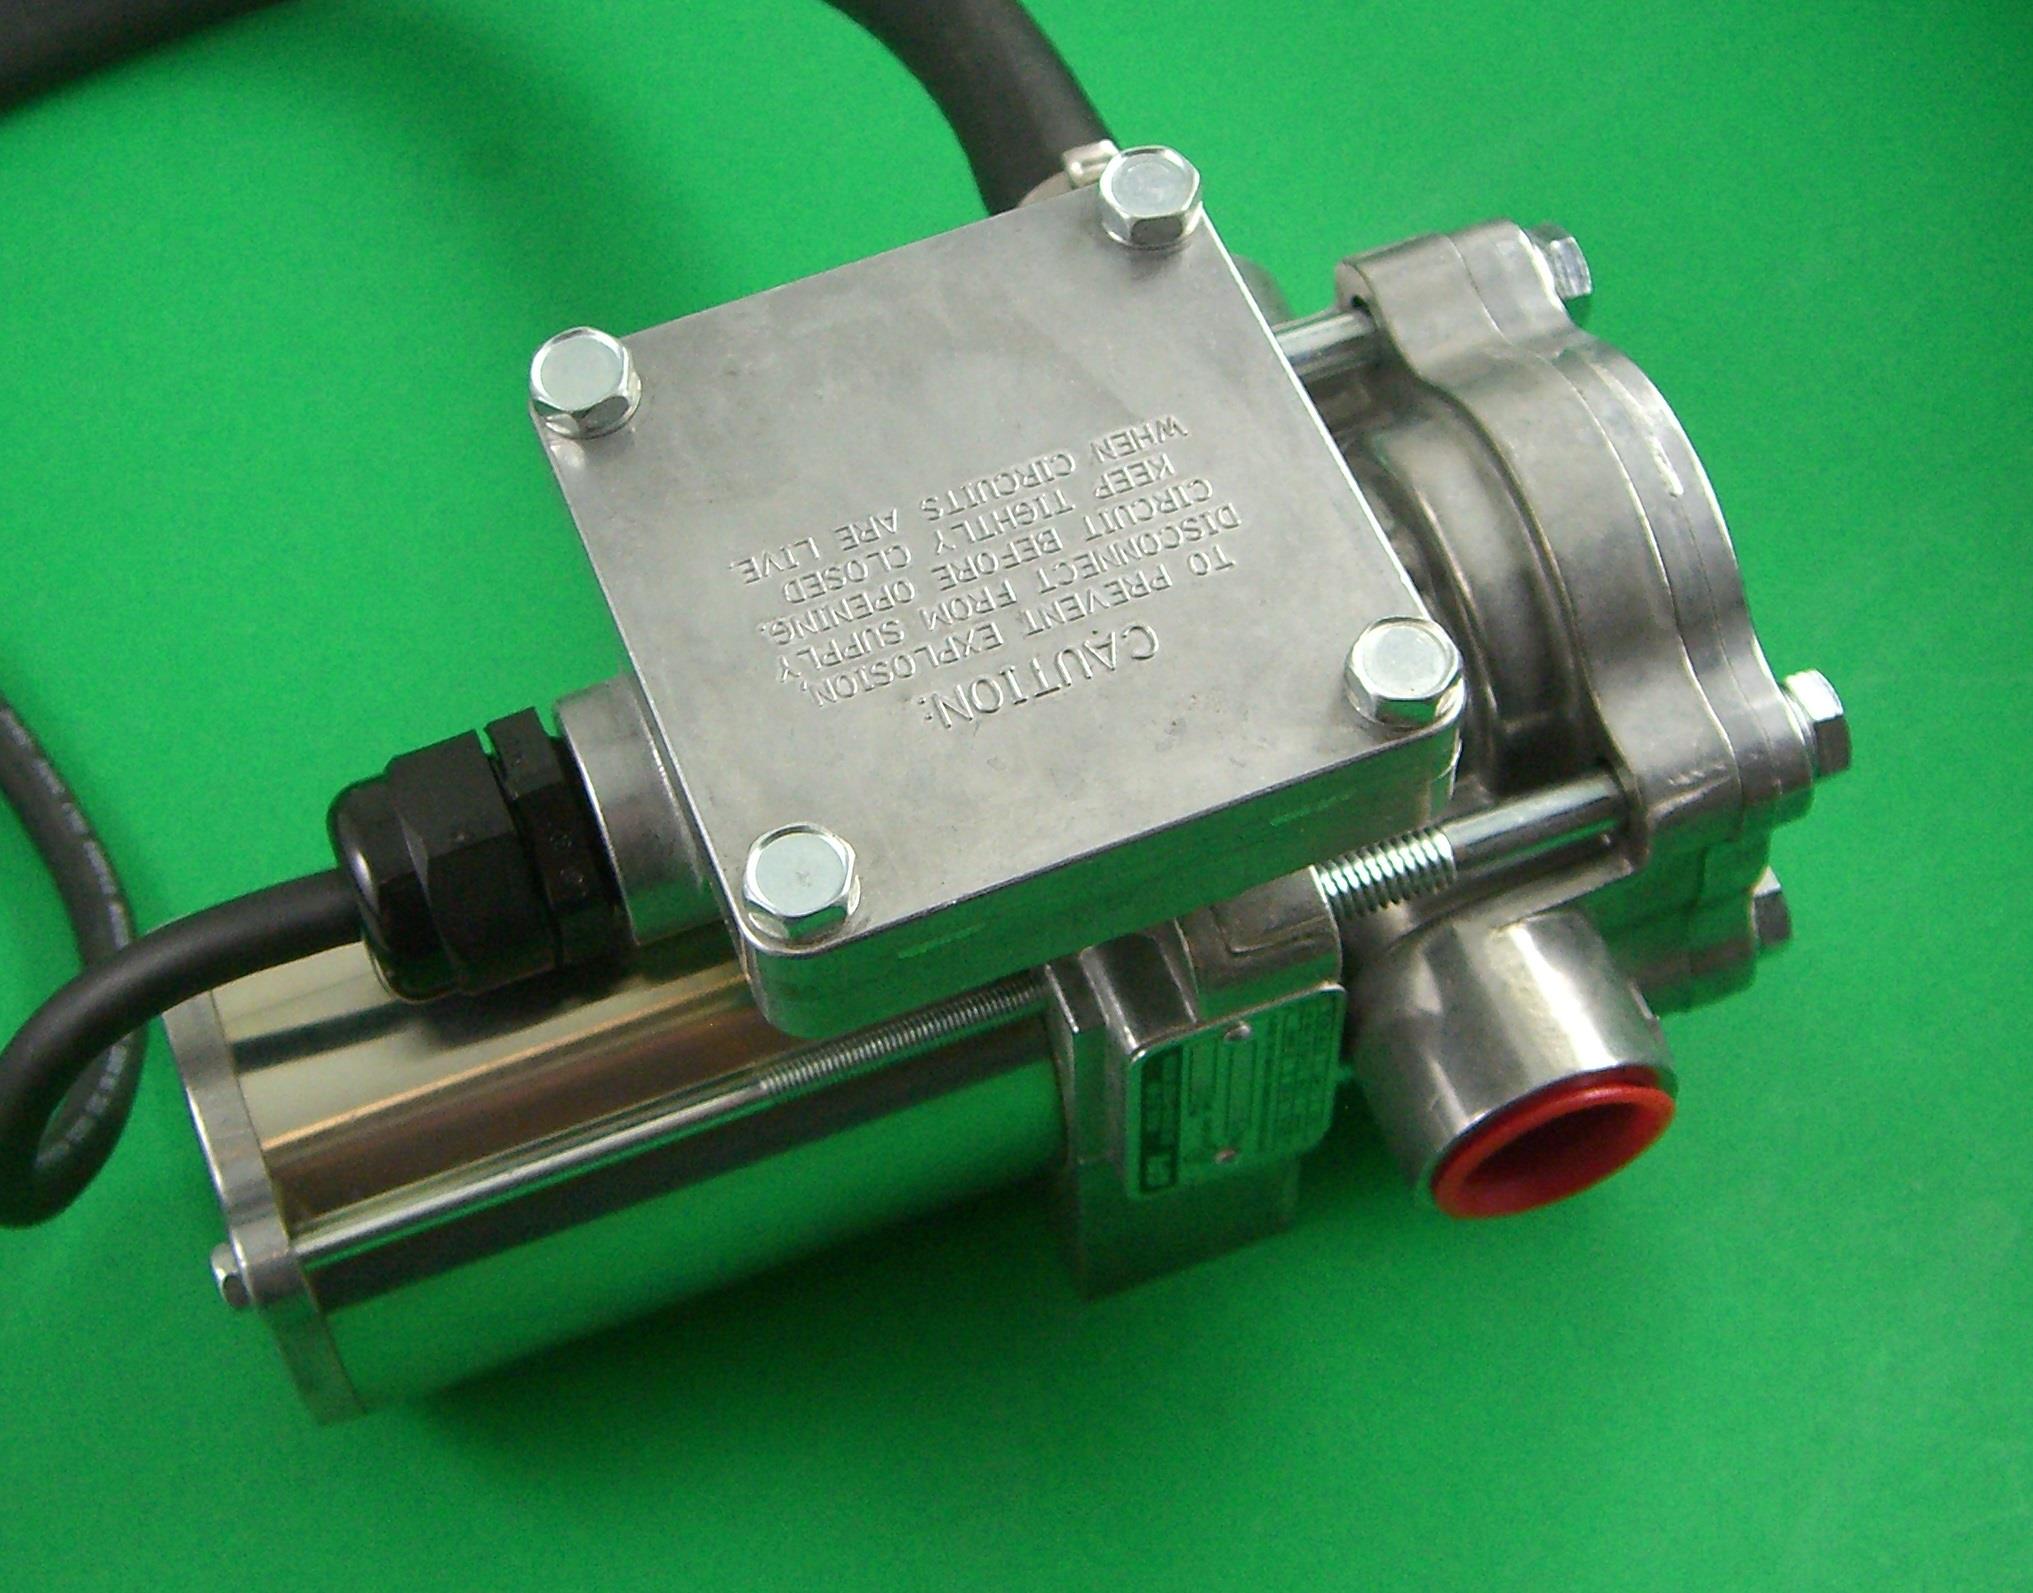 ECI 6173 Fuel Pump GPI EZ-8RV Explosion-Proof Motor | eBay Gpi Ez 8 Fuel Pump Parts